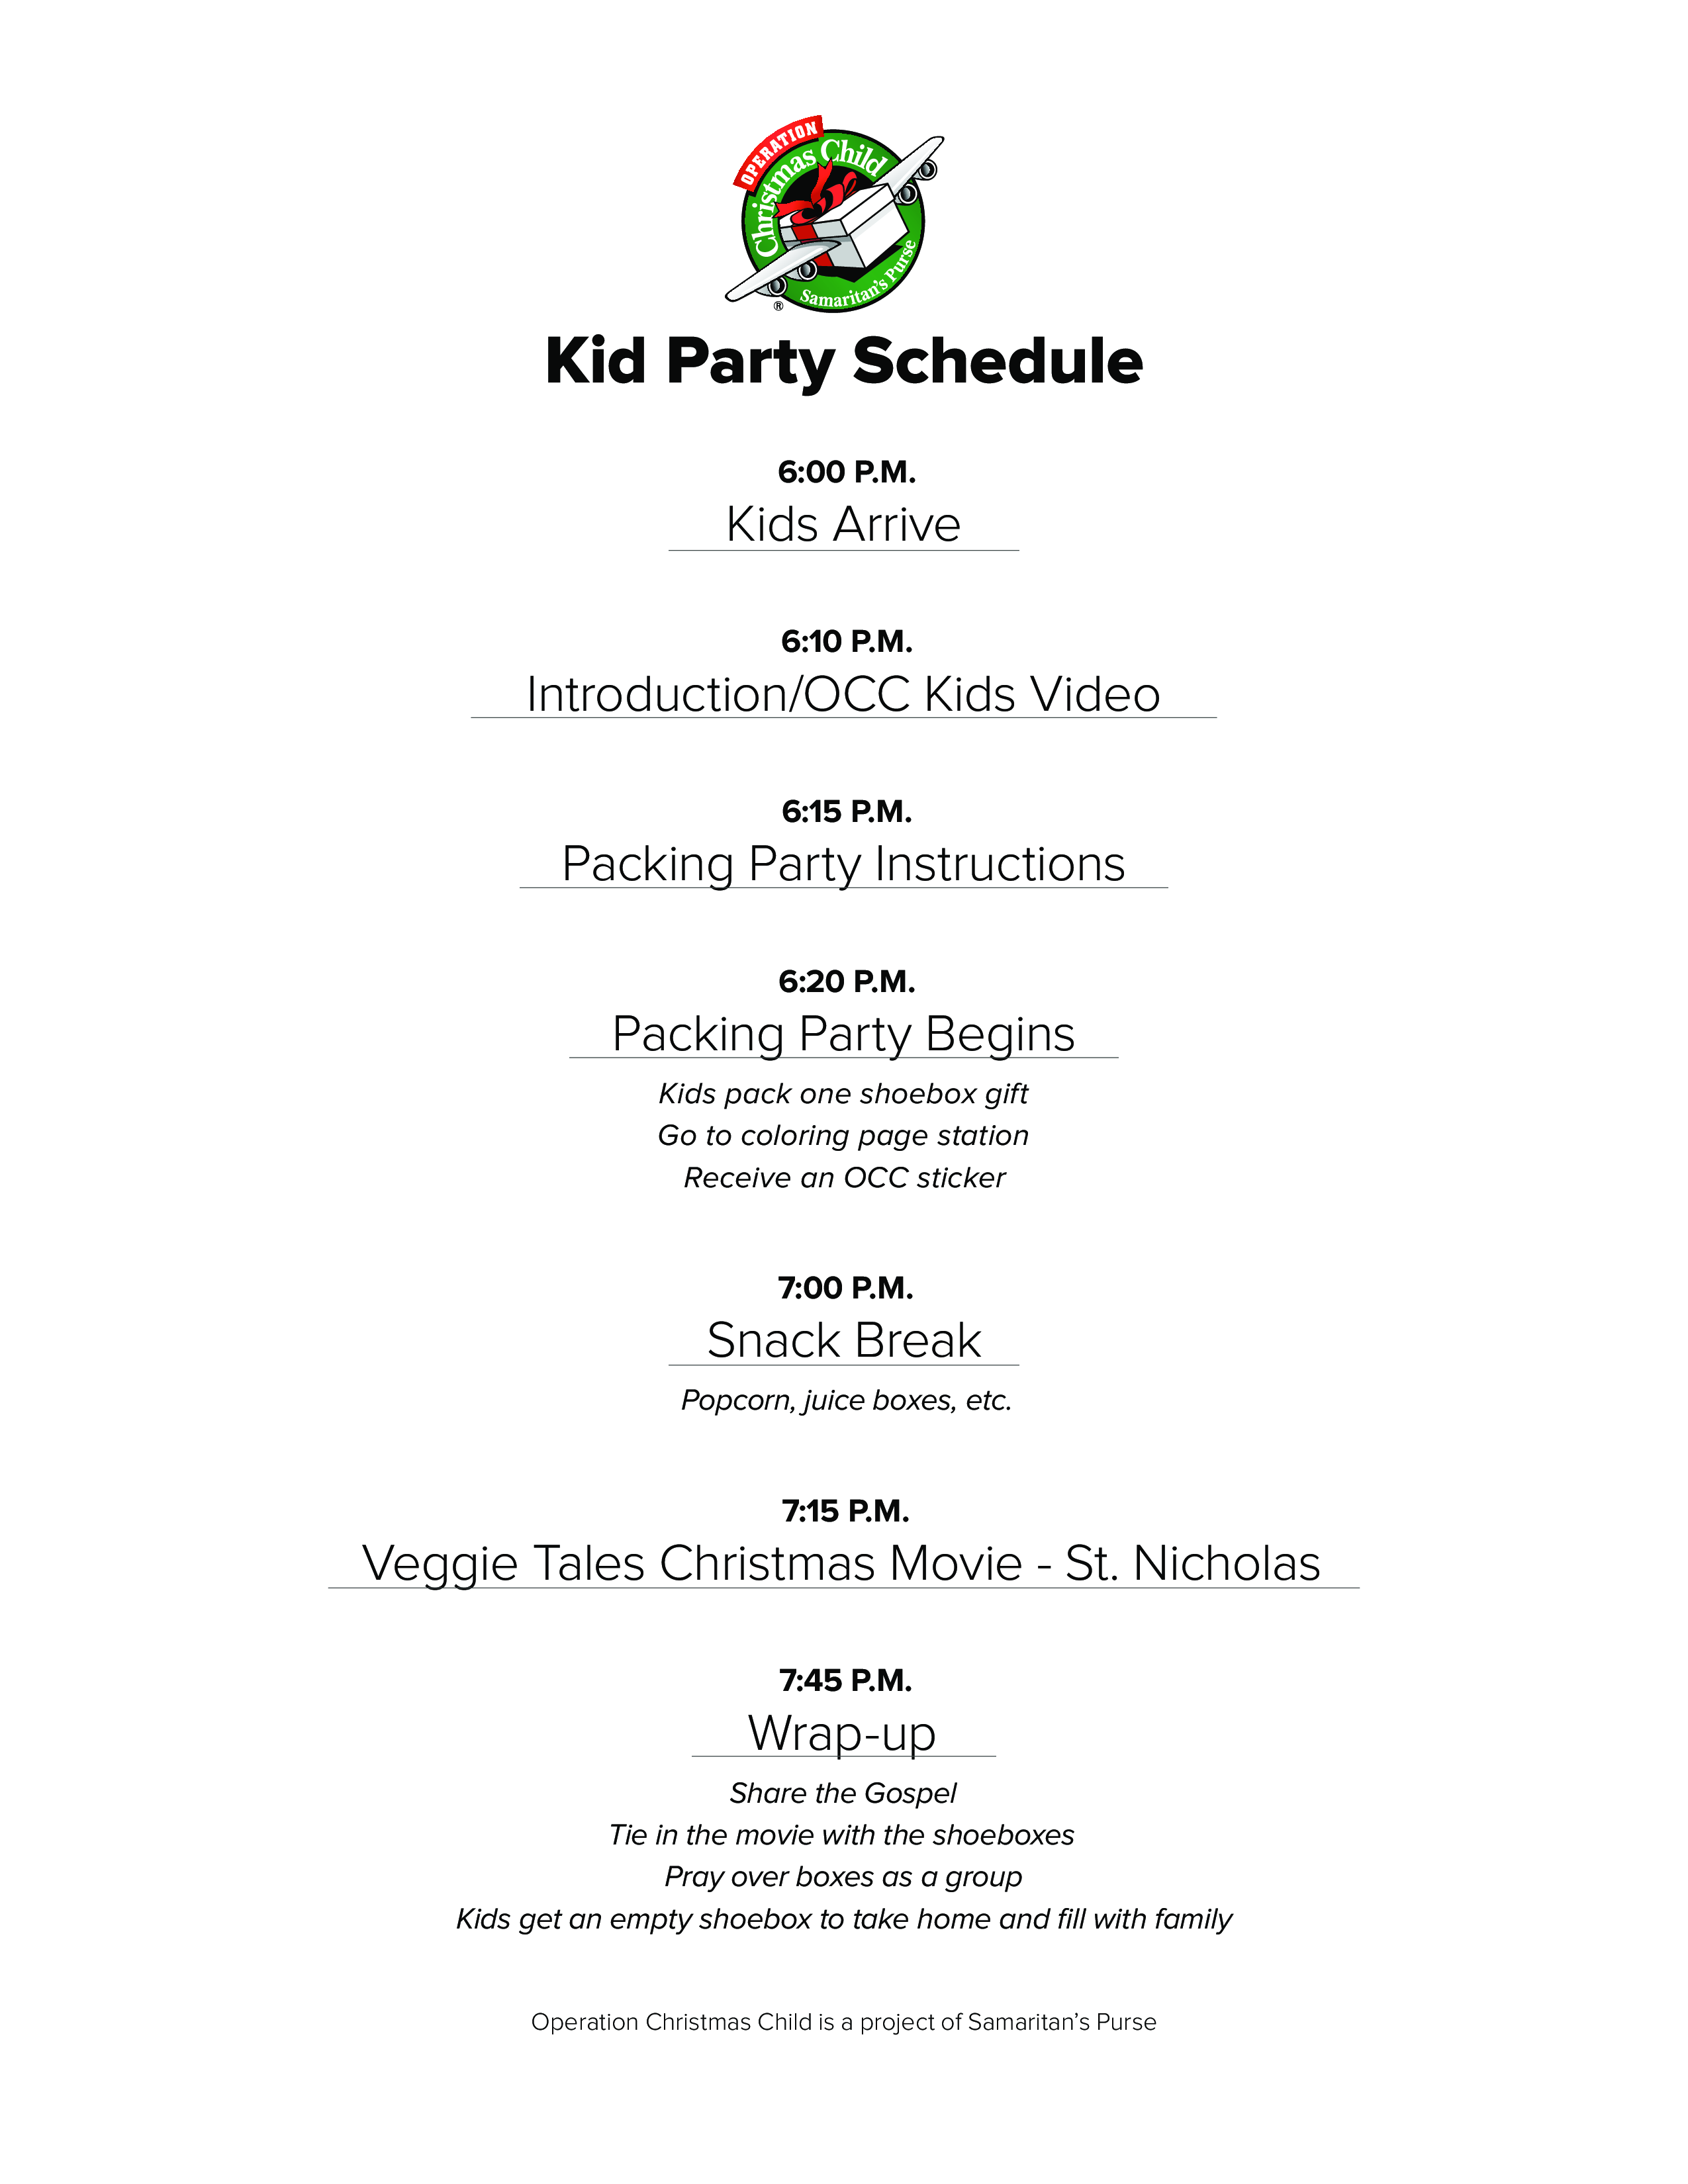 kid's party schedule plantilla imagen principal